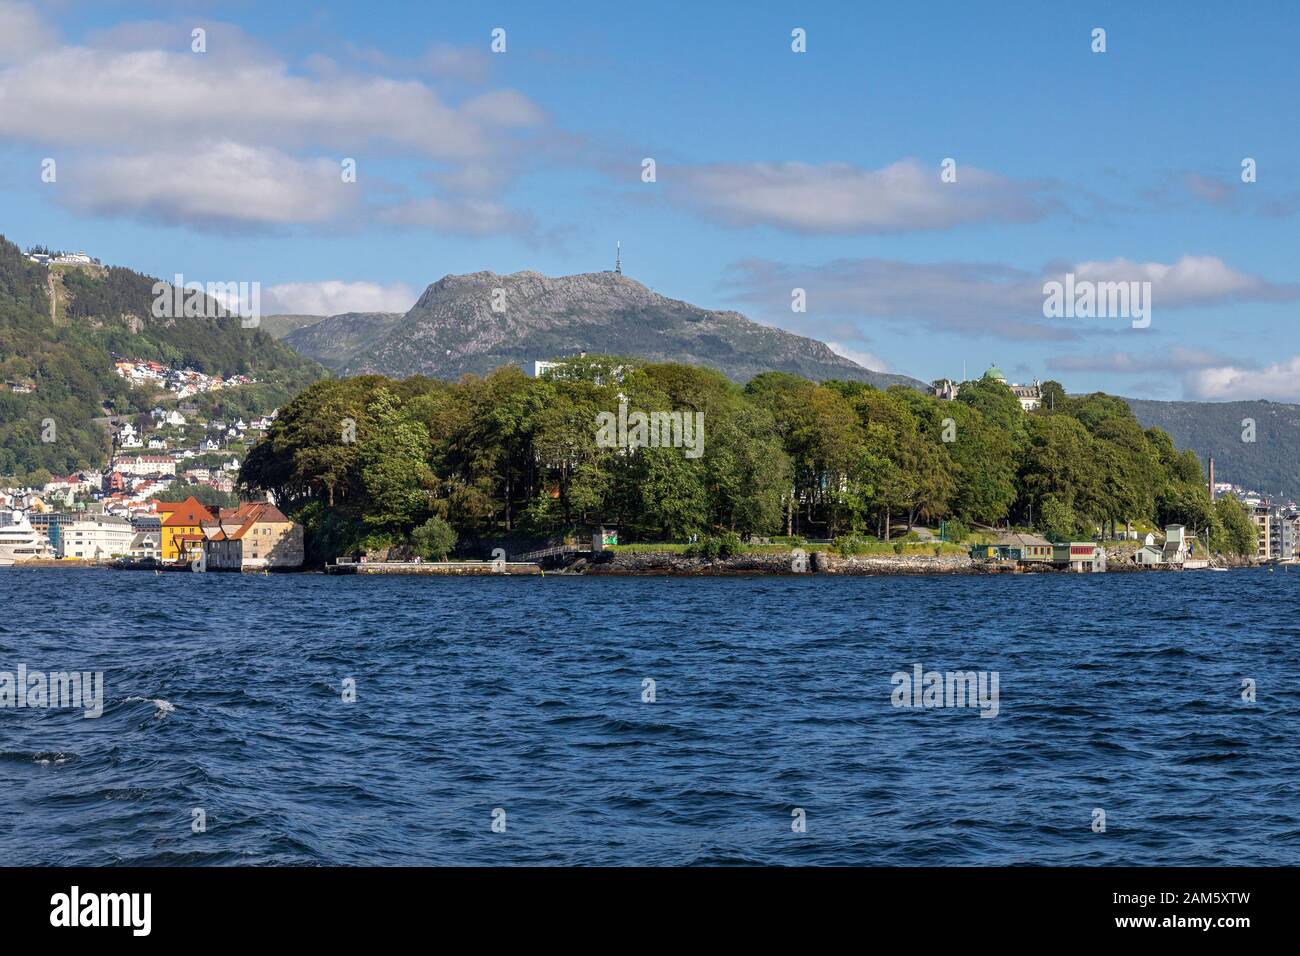 Nordnesparken Halbinseln, Bergen, Norwegen. Mount Ulriken und Mount Floyen im Hintergrund. Stockfoto